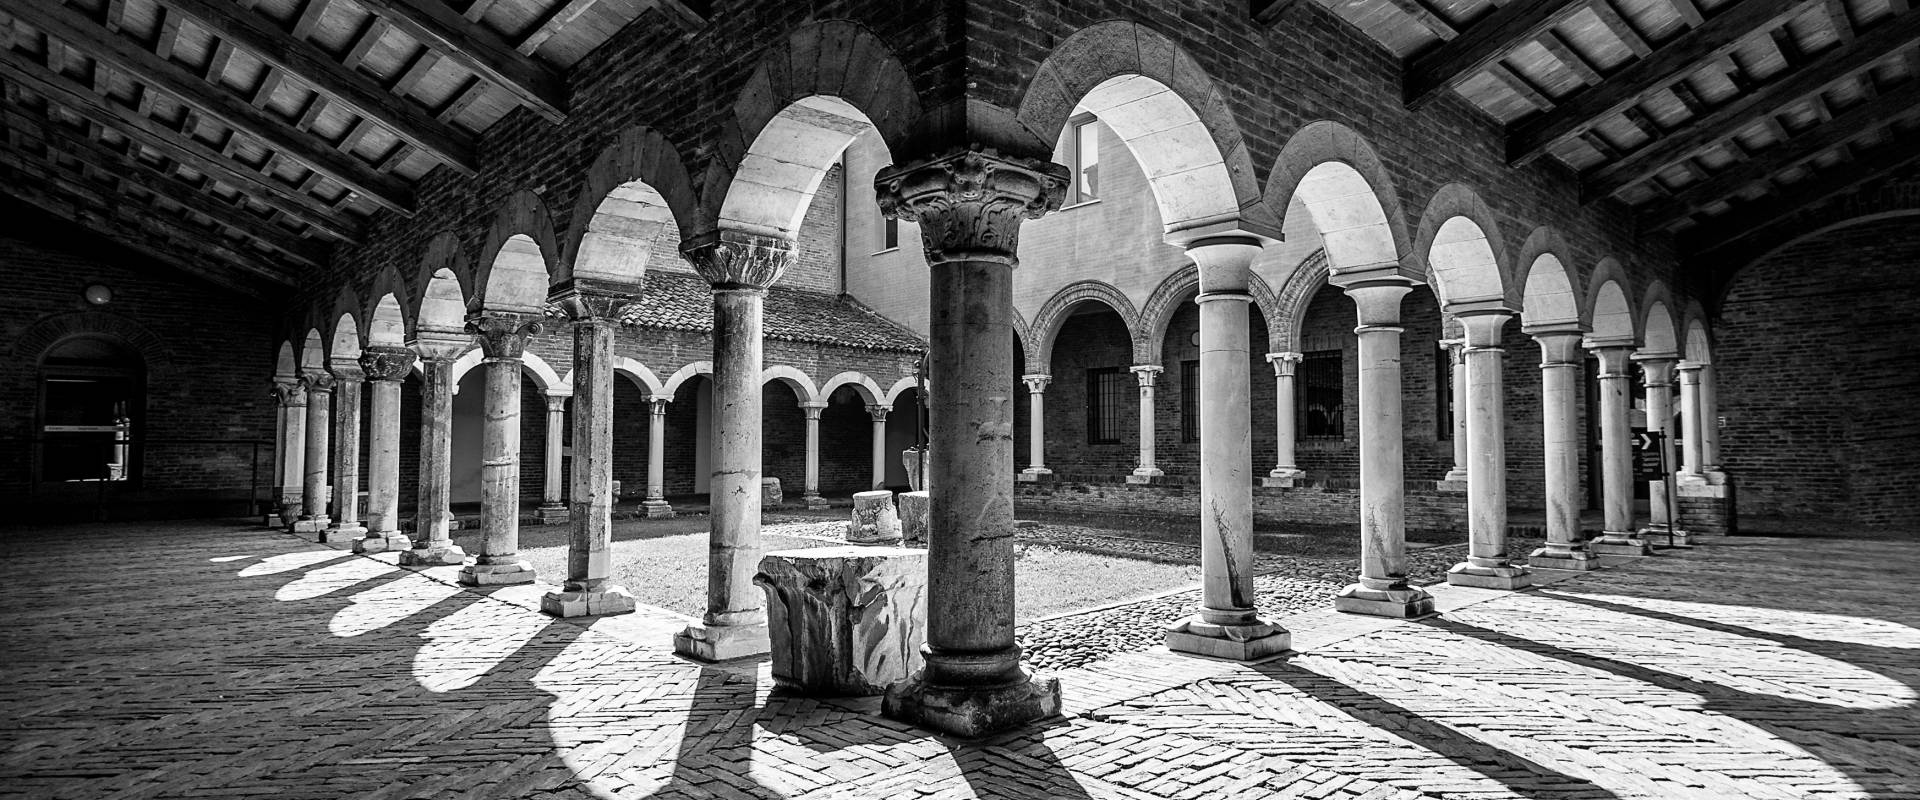 Museo della Cattedrale3 photo by Andrea Parisi